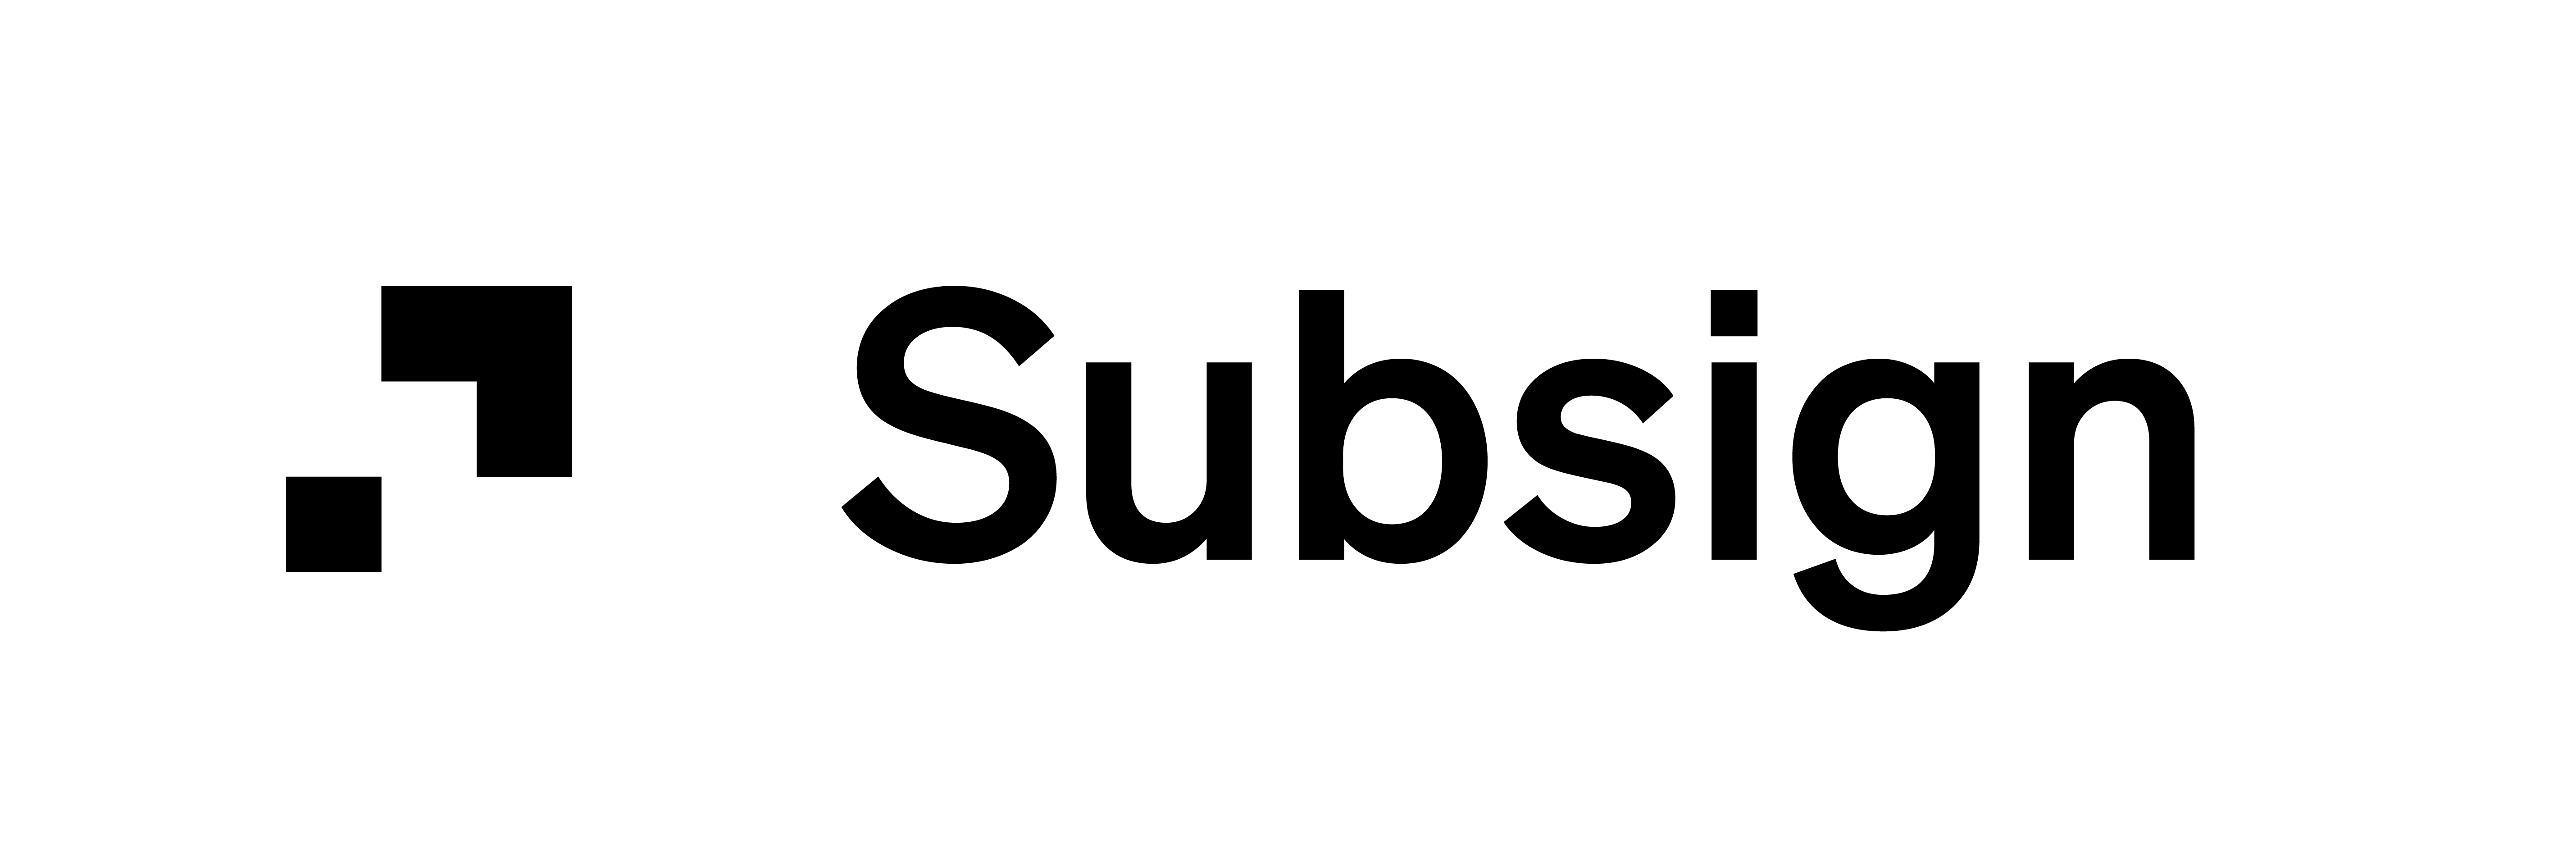 SubSign logo von Object